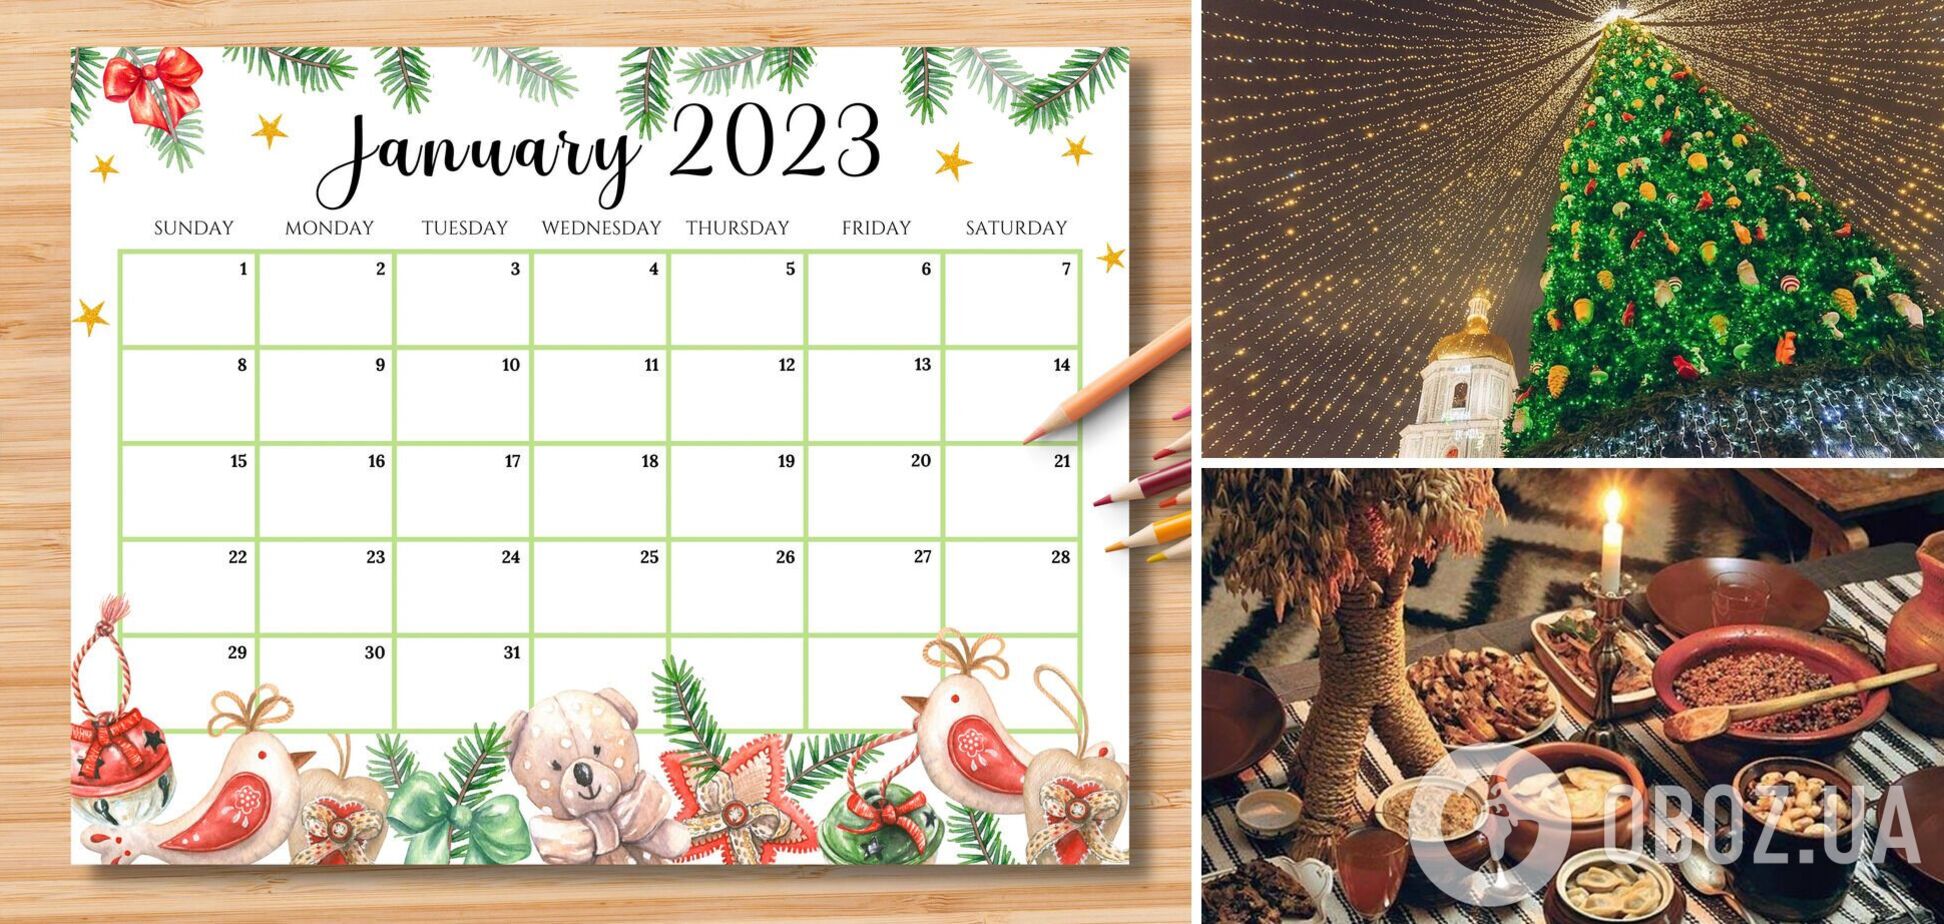 Выходные и церковные праздники в январе 2023: когда будут отдыхать украинцы